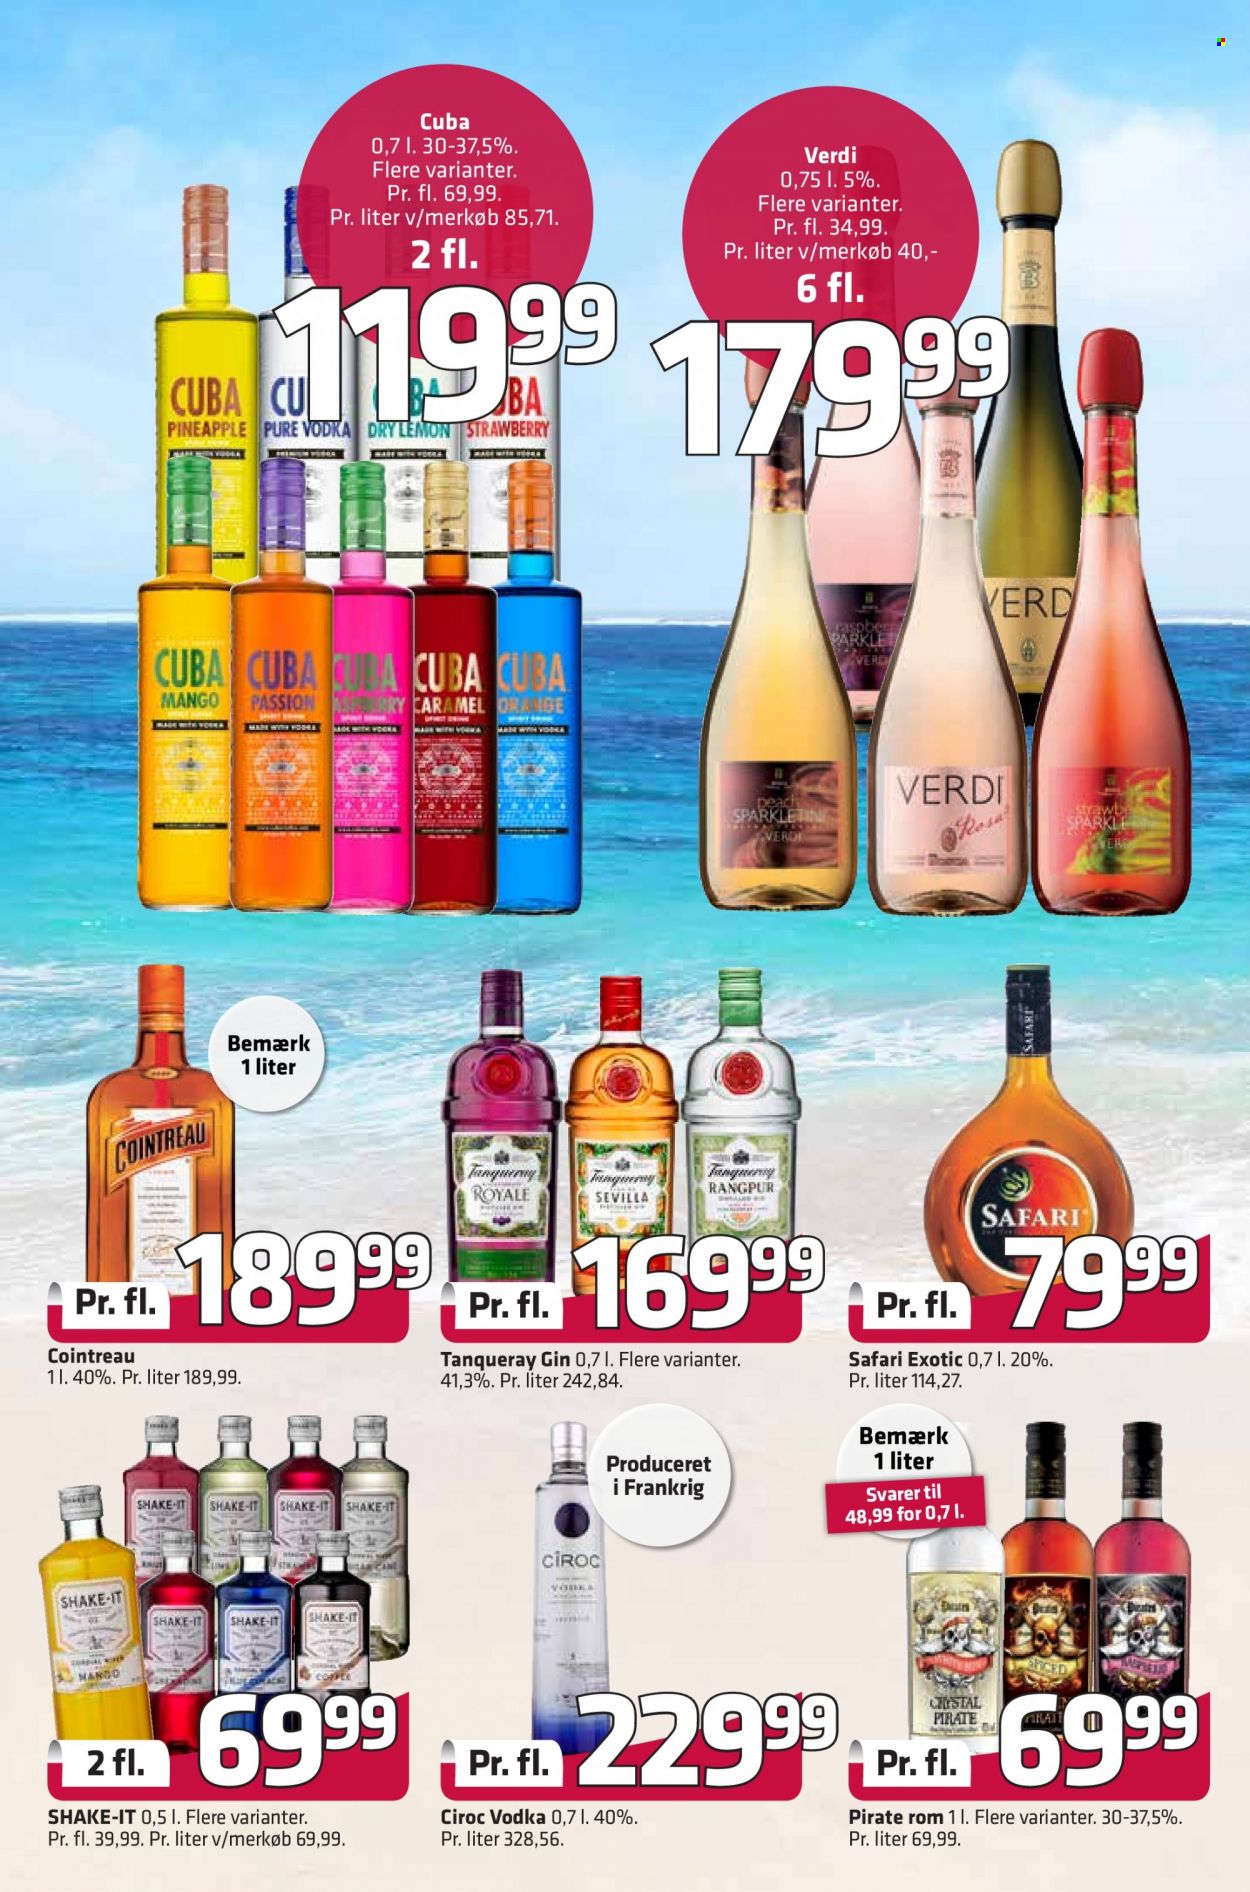 thumbnail - Fleggaard reklamblad - 20/7 2022 - 9/8 2022 - varor från reklamblad - cointreau, Vodka, gin, Cuba. Sida 39.